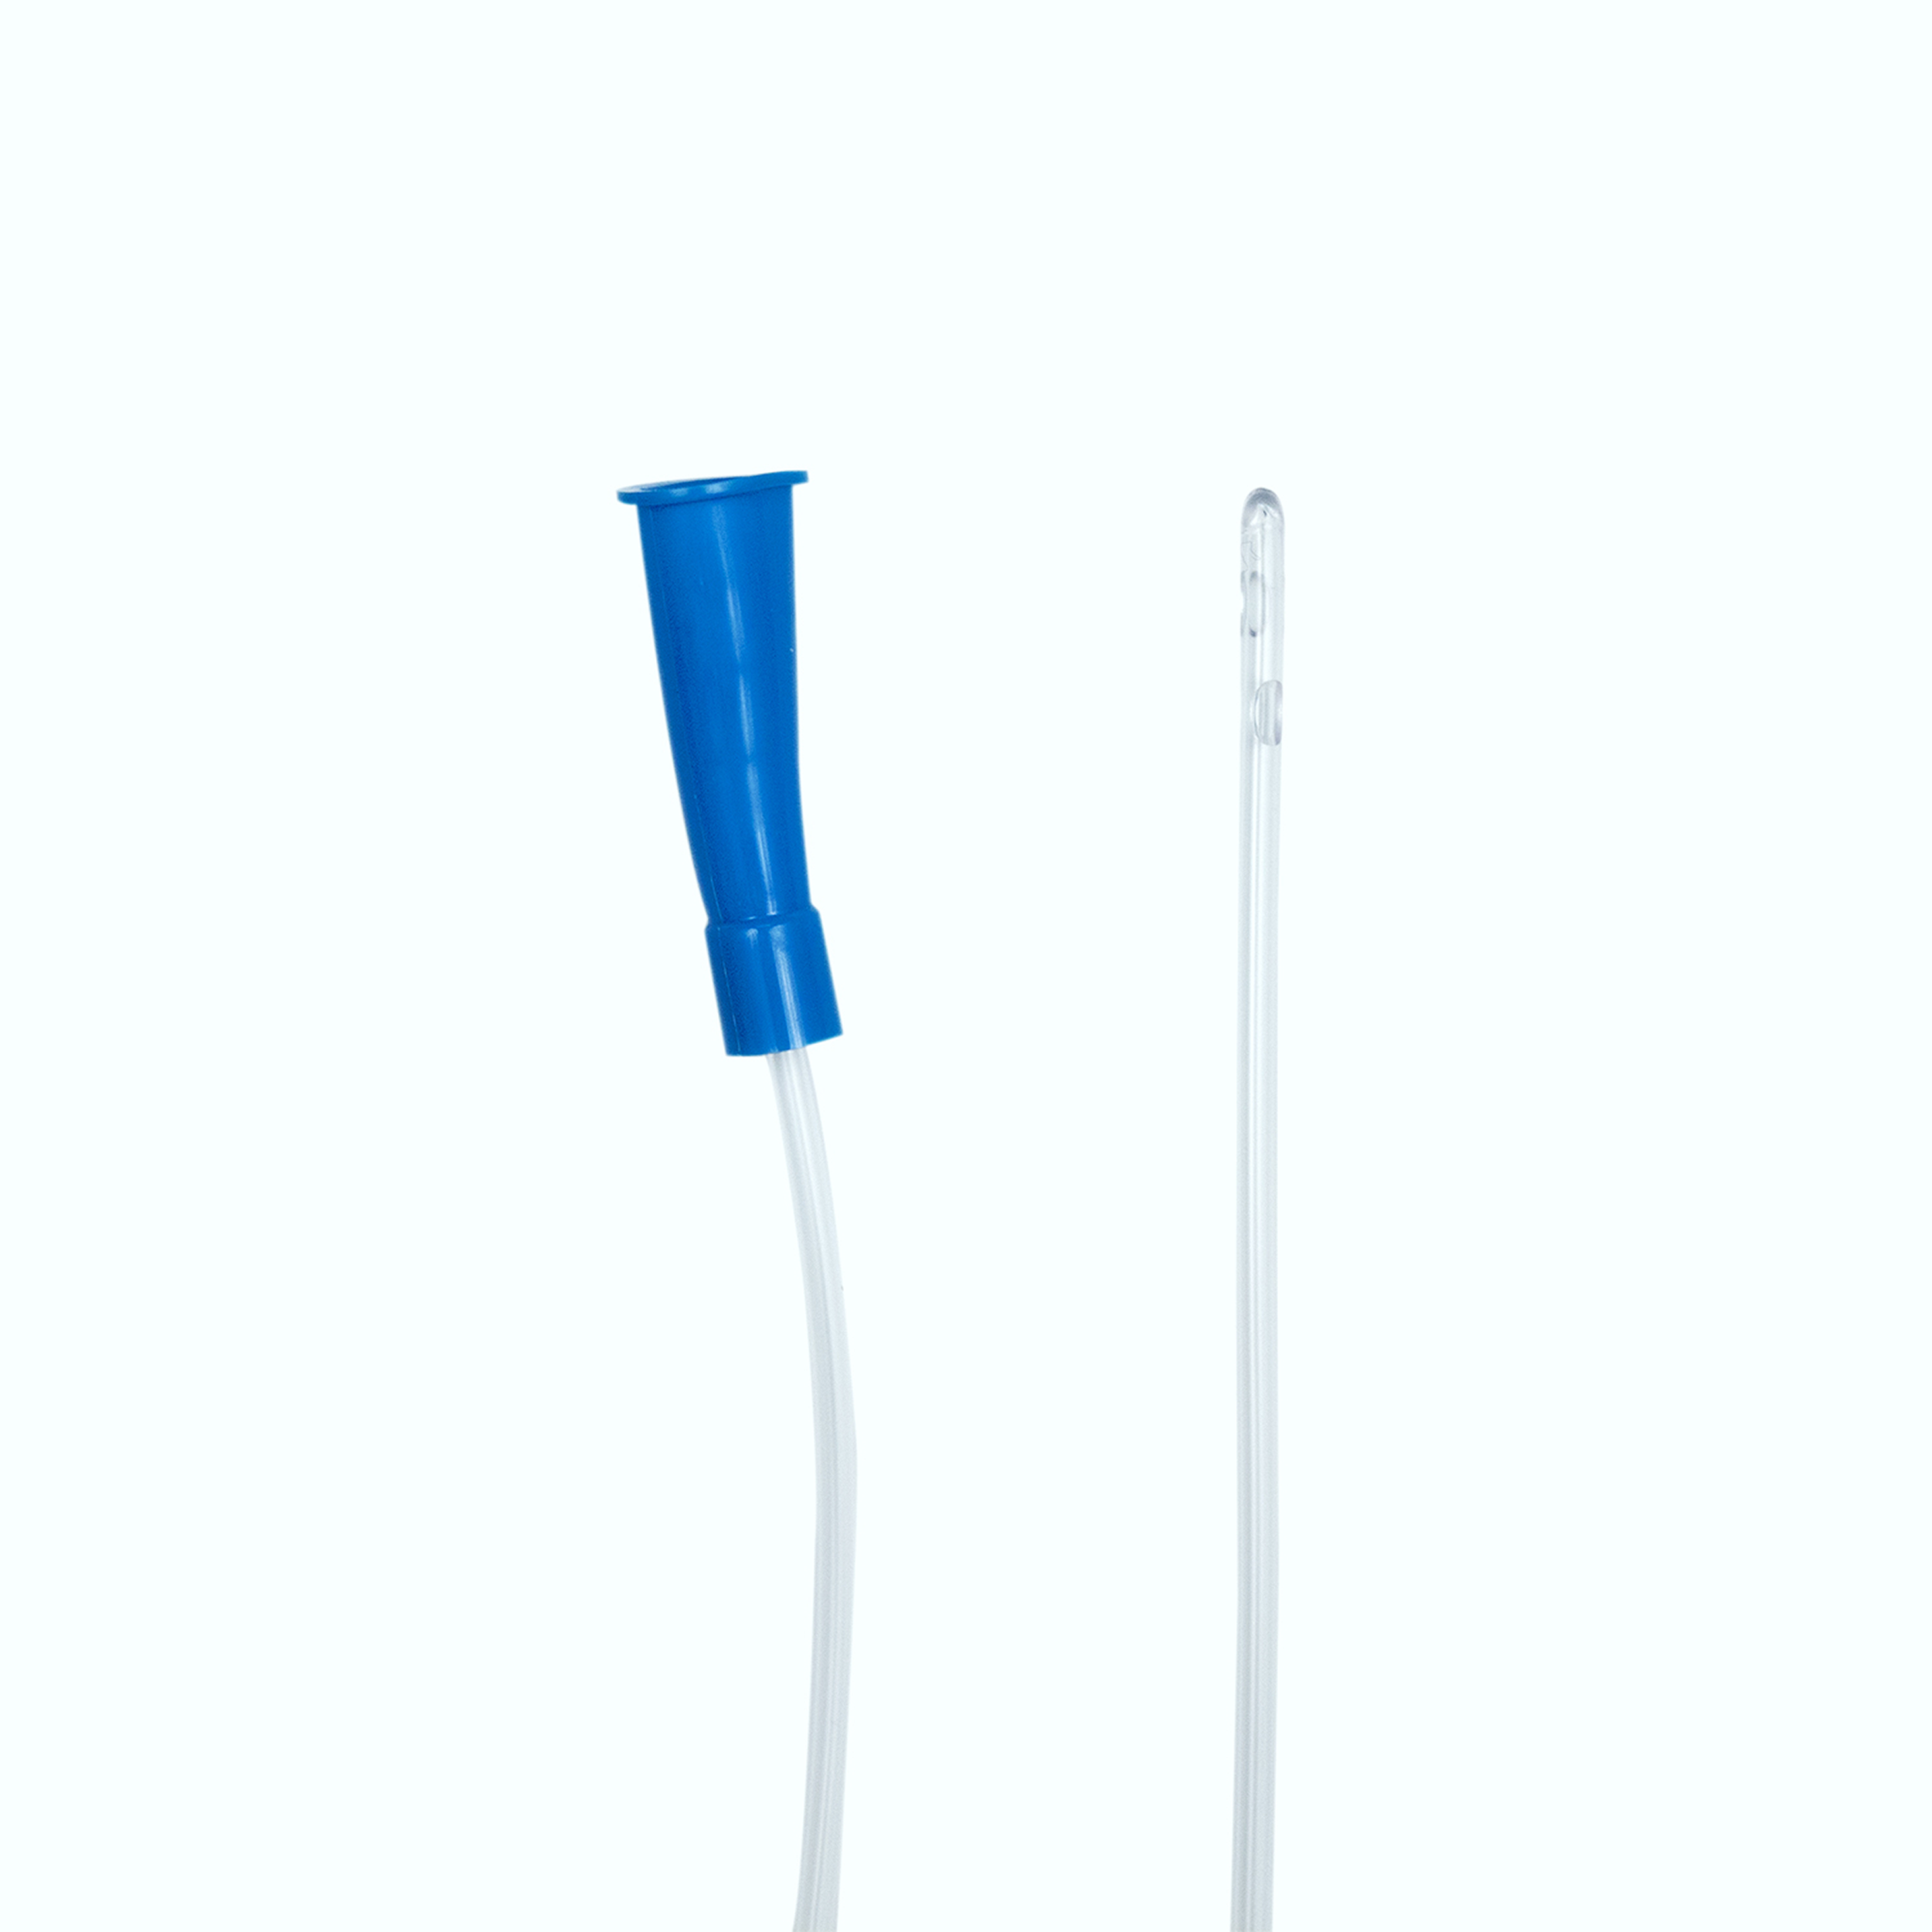 Intermittent Catheter (Female) 8Fr, Sterile Blue